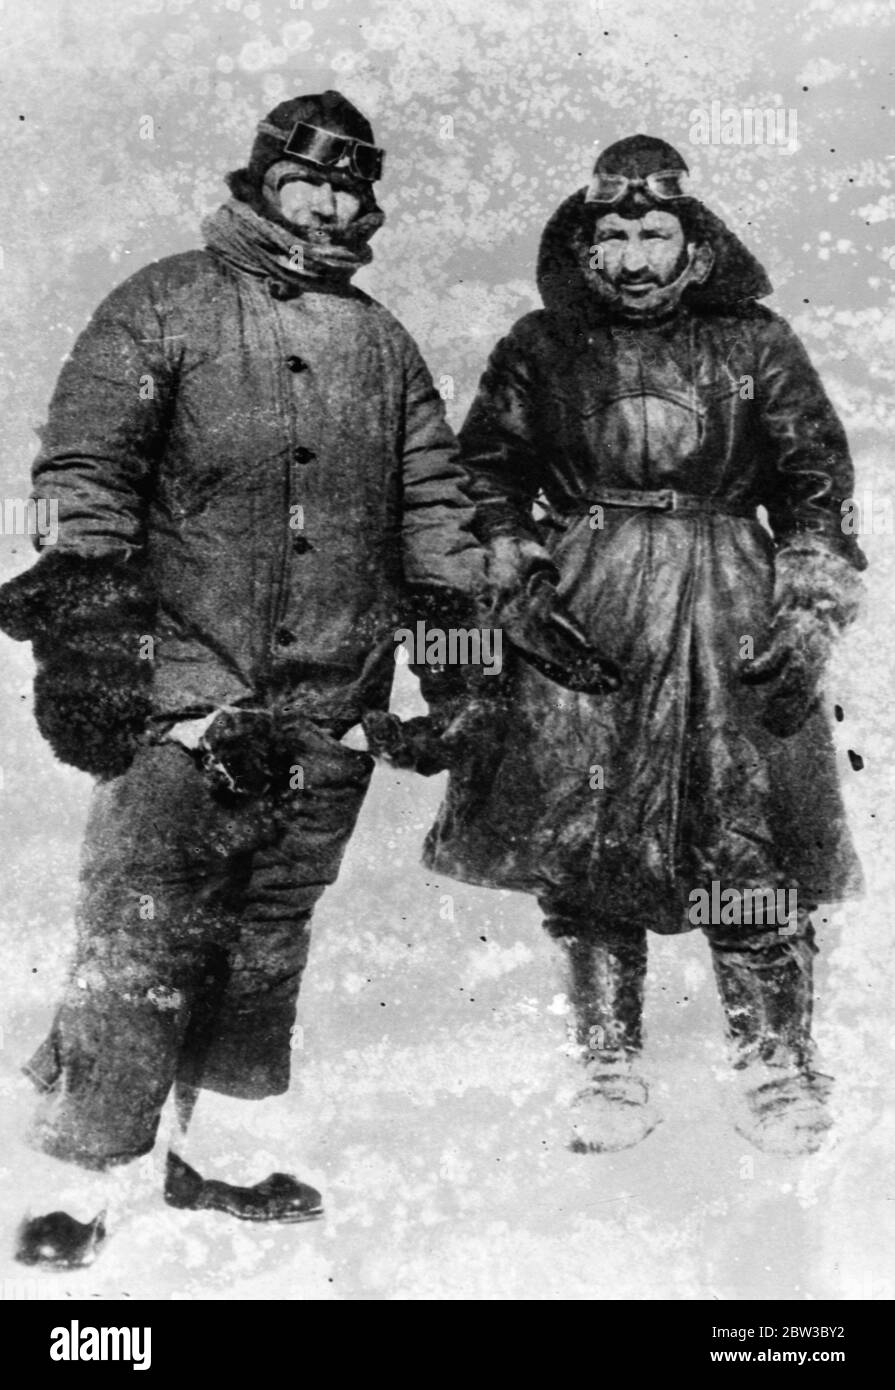 SS Chelyuskin , un piroscafo sovietico inviato in una spedizione per navigare attraverso il ghiaccio polare lungo la rotta marittima settentrionale da Murmansk a Vladivostok , è diventato legato al ghiaccio nelle acque artiche durante la navigazione . È stato catturato nei campi di ghiaccio in settembre. Dopo di che si è spostato nel pacco di ghiaccio prima di affondare il 13 febbraio 1934, schiacciato dai licepack vicino all'isola di Kolyuchin nel mare di Chukchi . L'equipaggio riuscì a fuggire sul ghiaccio e costruì una pista di atterraggio realizzata localmente utilizzando solo poche pale , pale di ghiaccio e due corone bar , che aiutarono nel salvataggio dell'equipaggio . Cinquantatré uomini camminarono Foto Stock